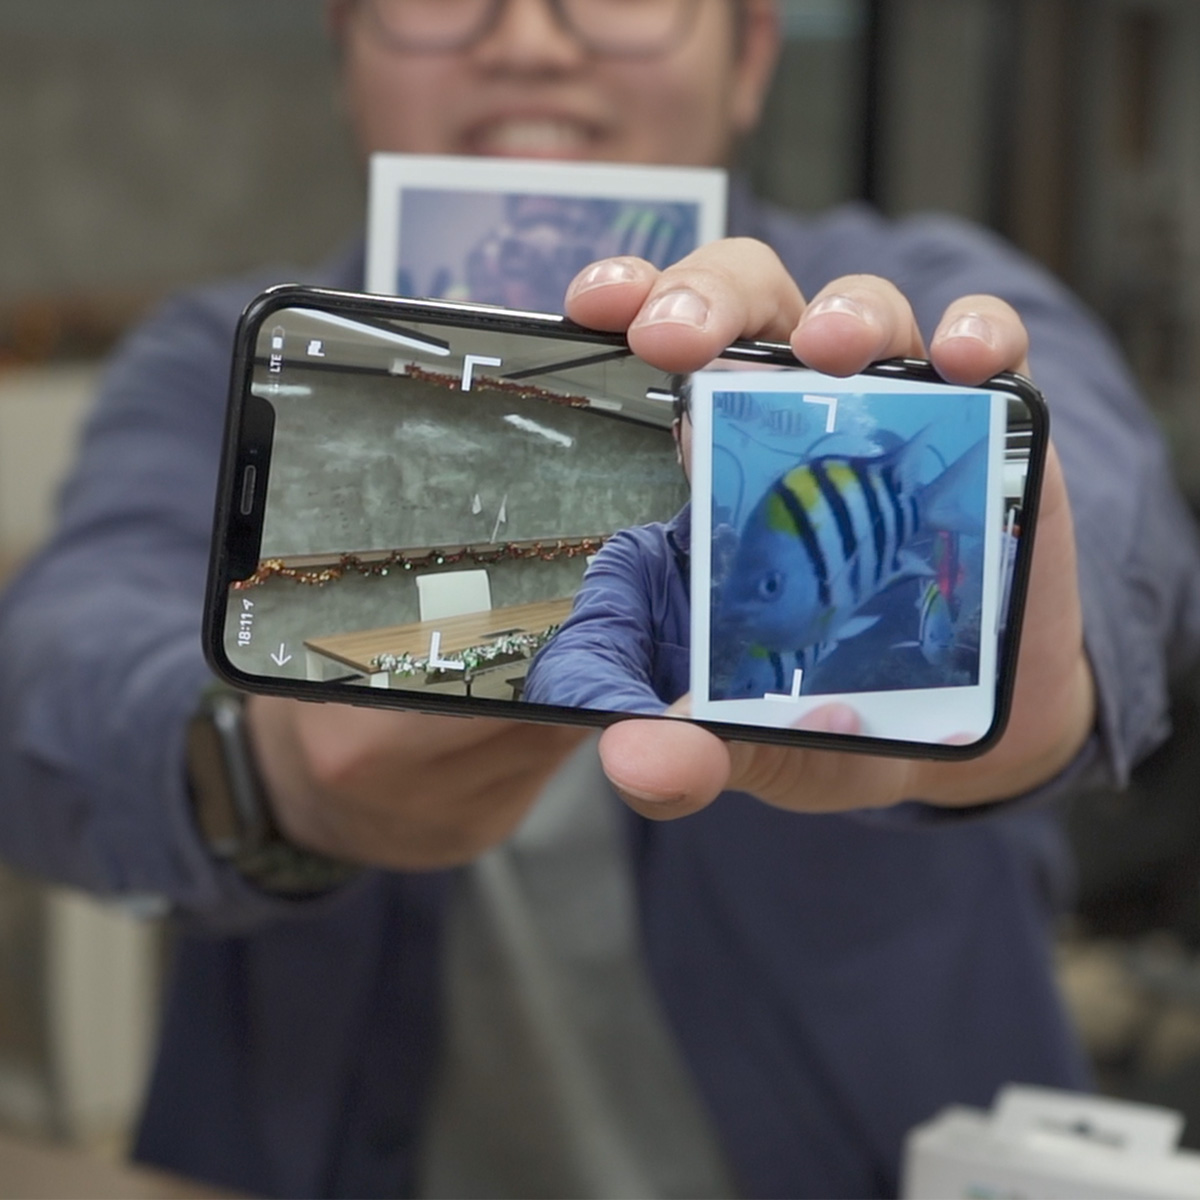 寶麗萊的手機程式備有 AR 顯示器，你可以加插影片到寶麗萊照片，用手機程式一掃即變成動態影片。